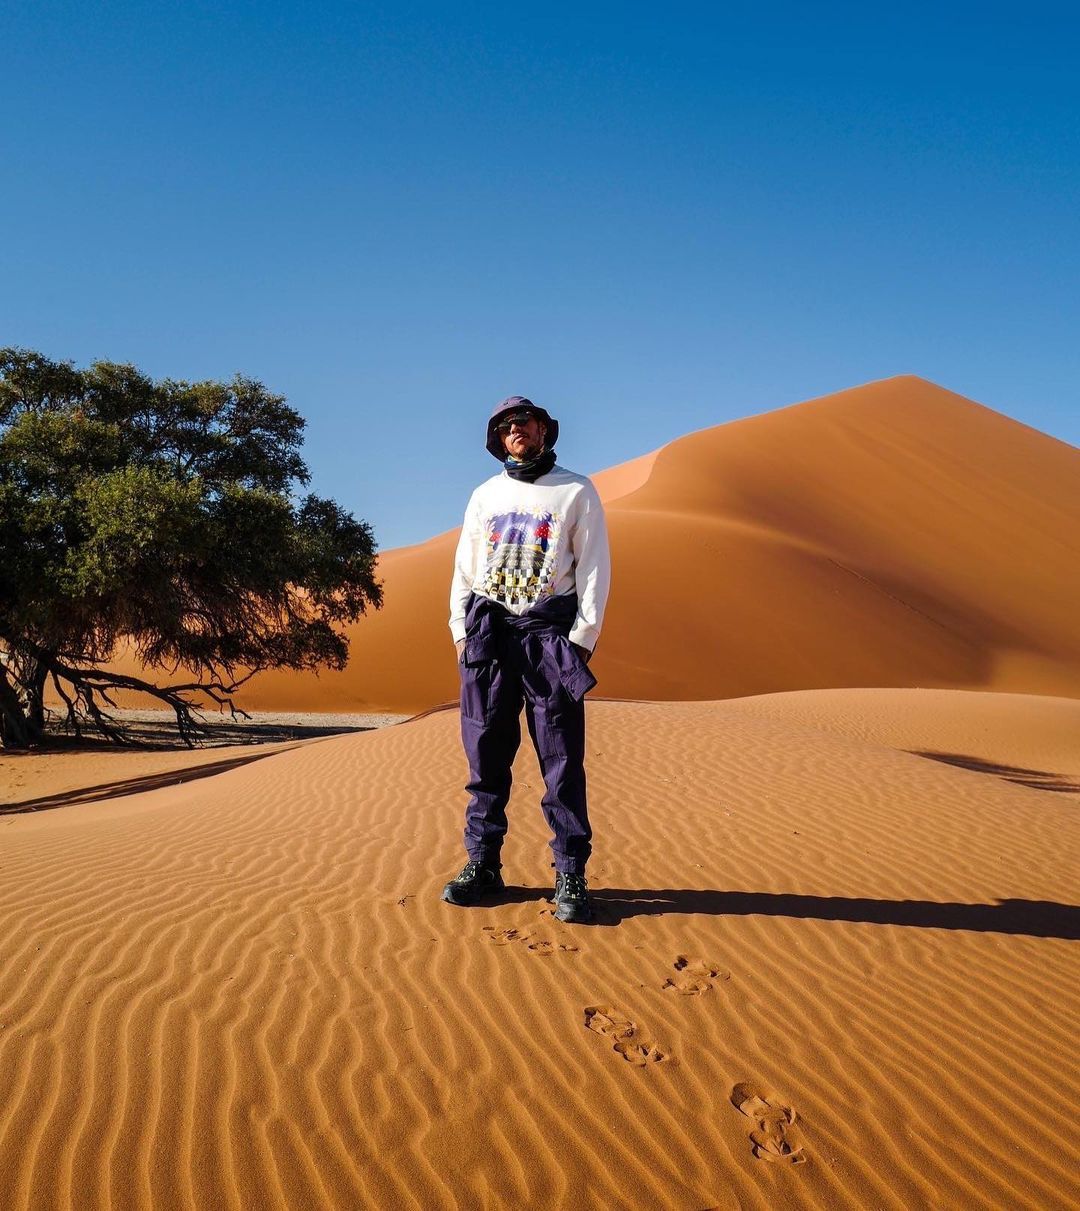 📸​| Lewis Hamilton zoekt naar zijn wortels in Afrika: 'Heeft mijn leven een reset gegeven'